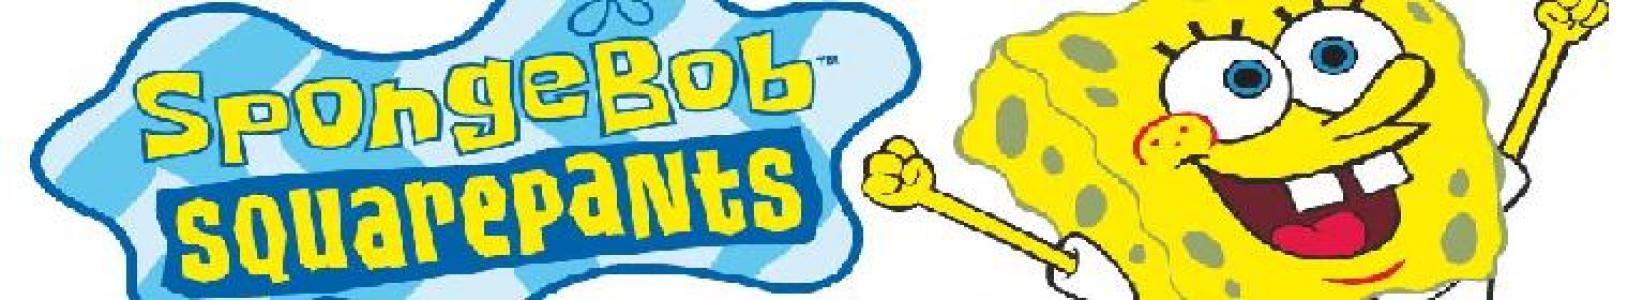 SpongeBob SquarePants: Battle for Bikini Bottom banner